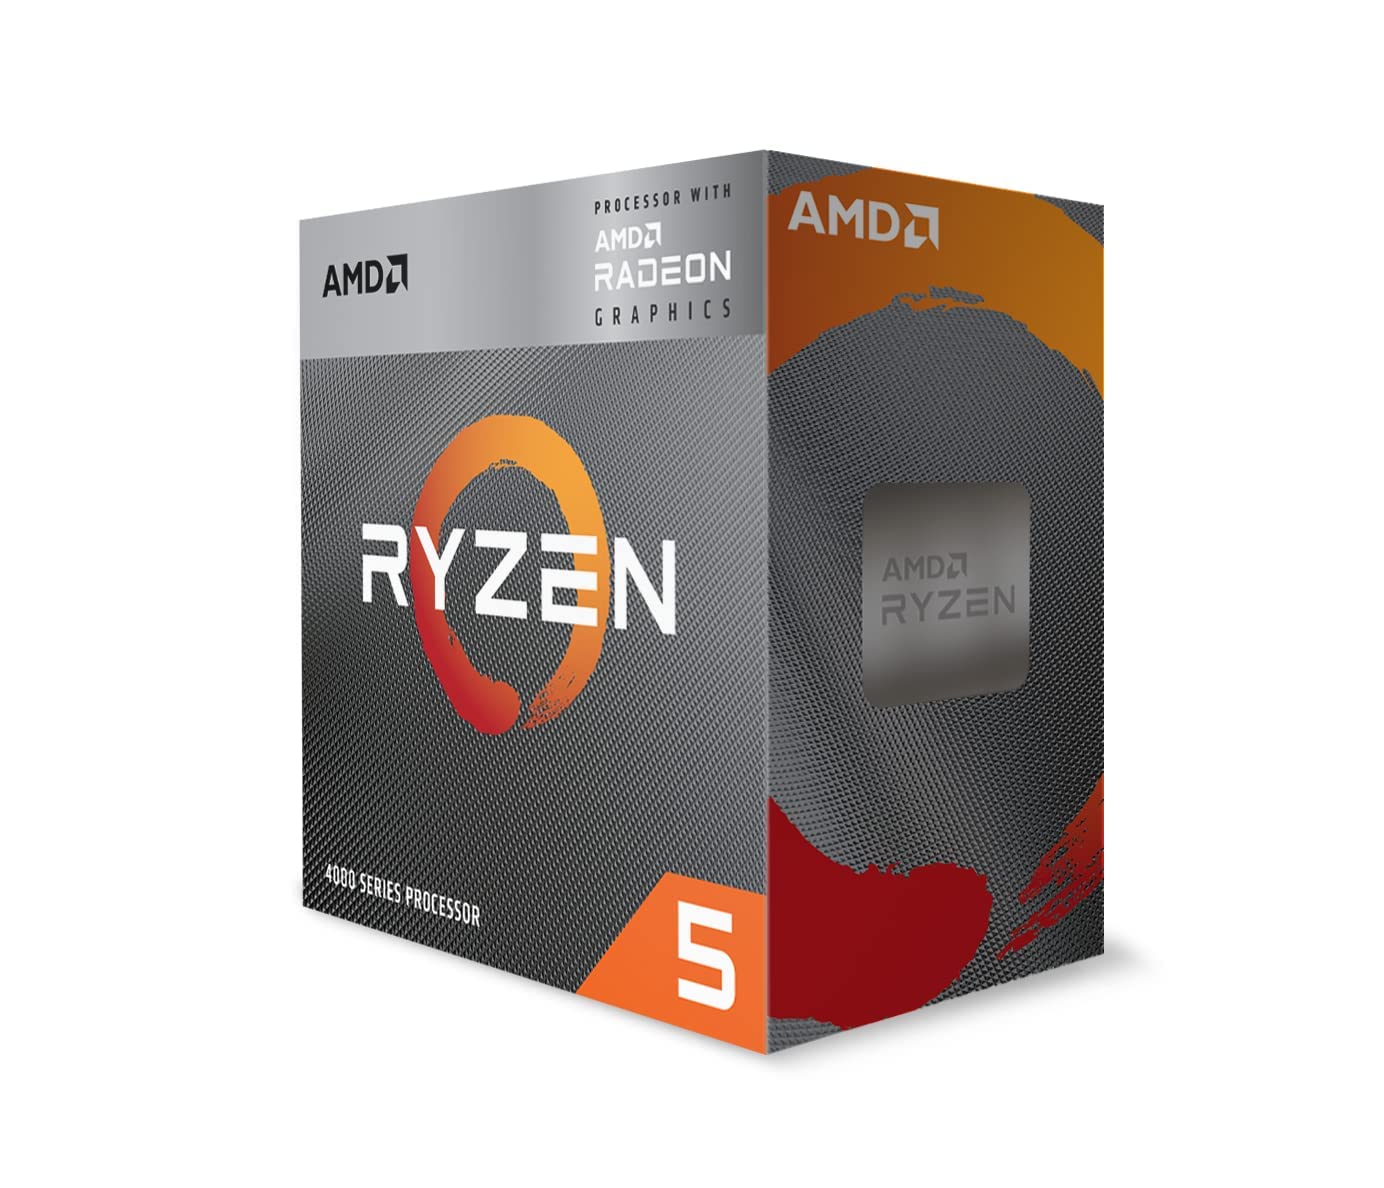 AMD Ryzen 5 4600G Desktop Processor with Radeon Graphics-Processors-AMD-computerspace